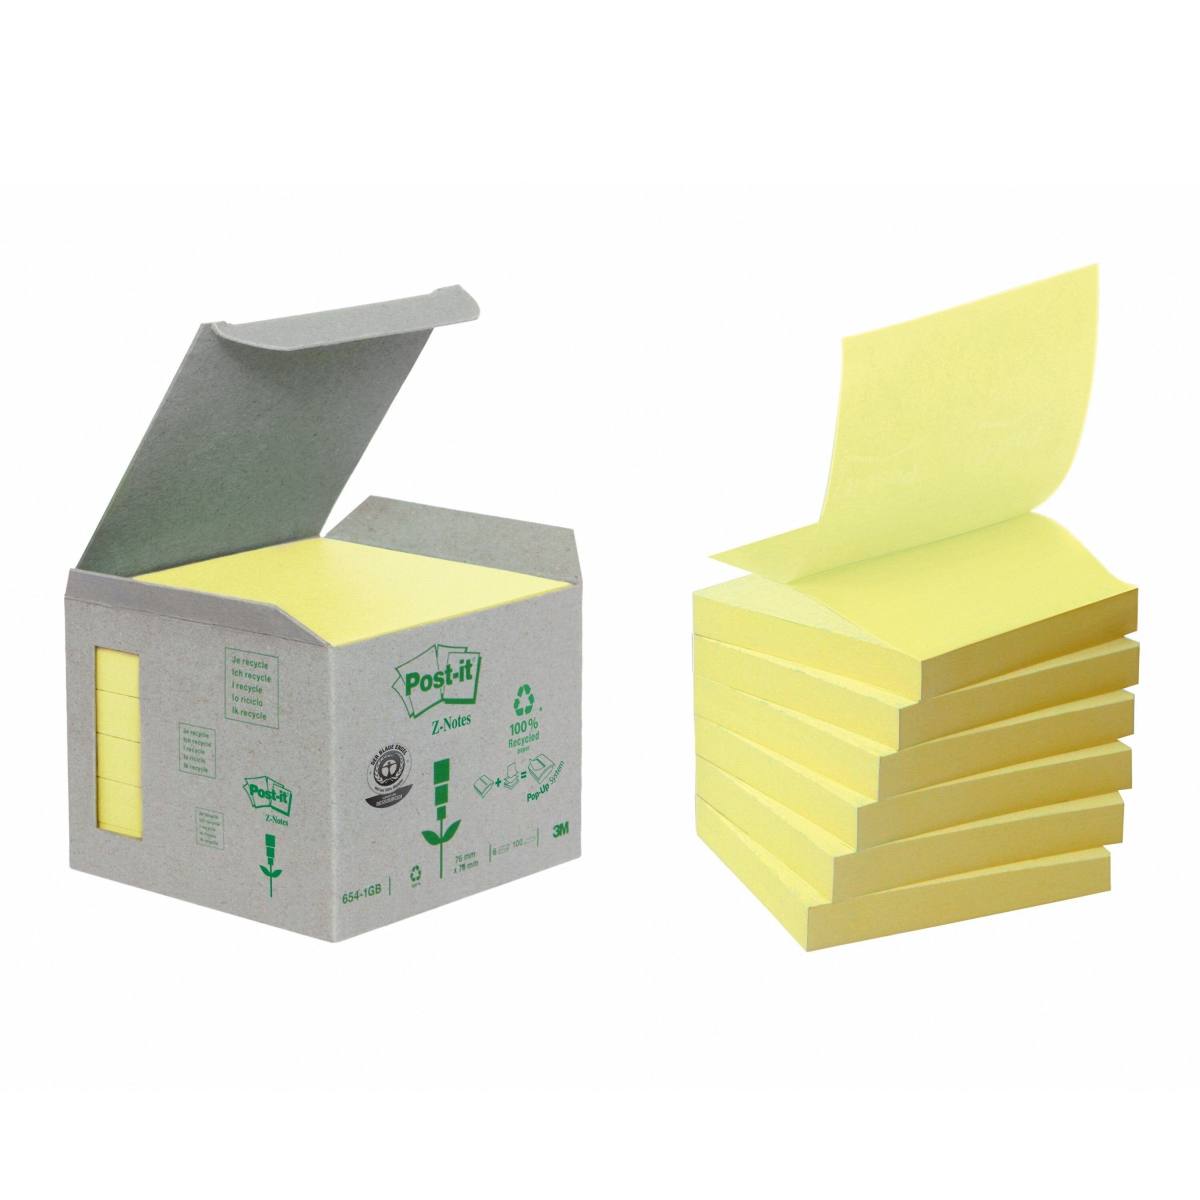 3M Post-it Reciclaje Z-Notes R3301B, 76 mm x 76 mm, amarillo, 6 blocs de 100 hojas cada uno